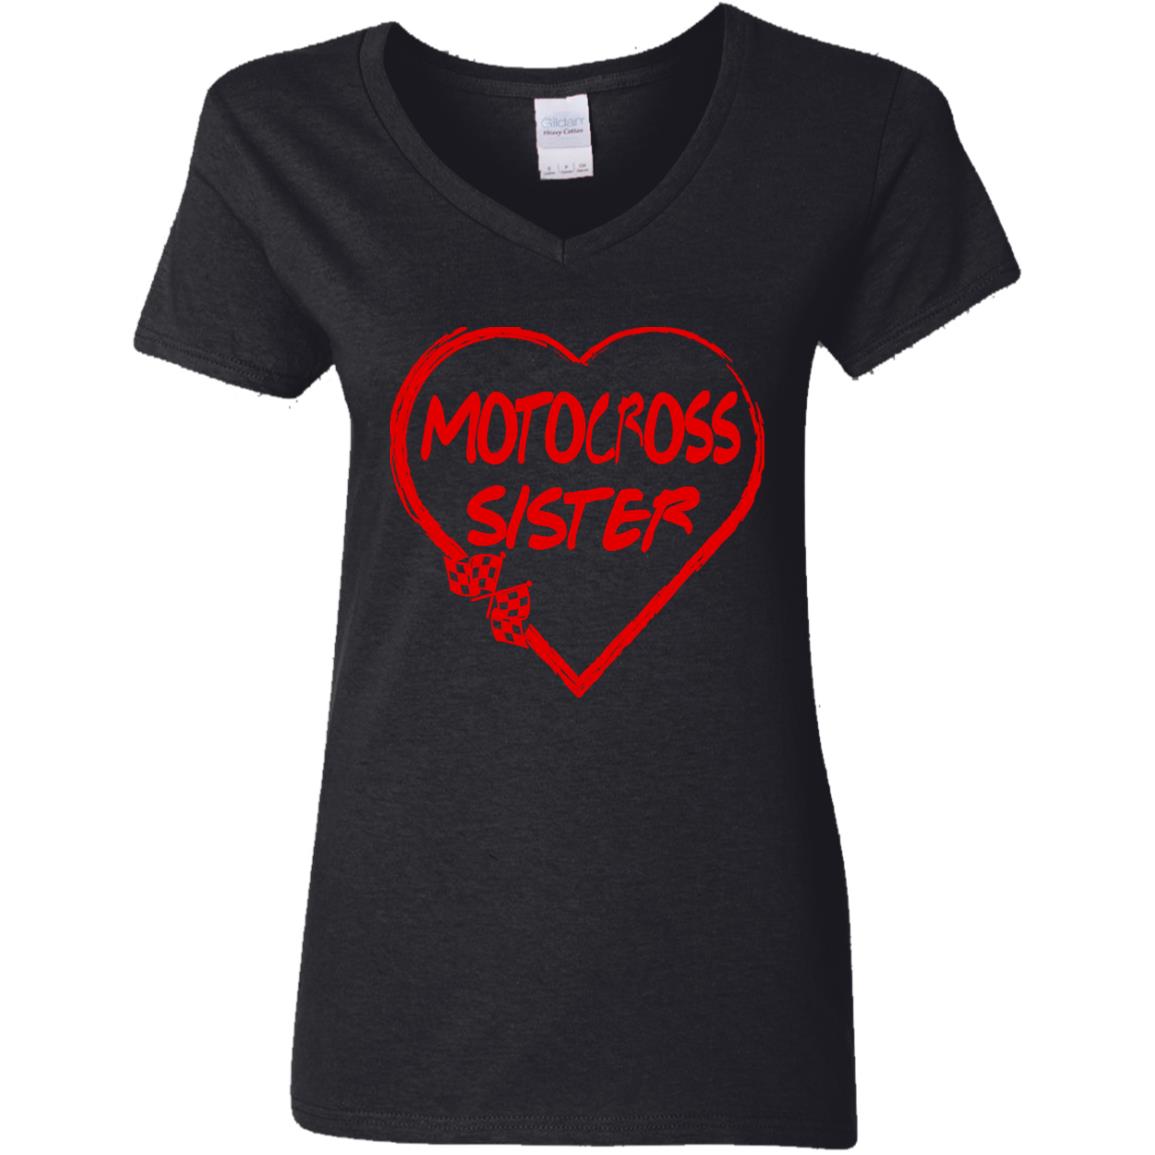 Motocross Sister Heart Ladies' 5.3 oz. V-Neck T-Shirt